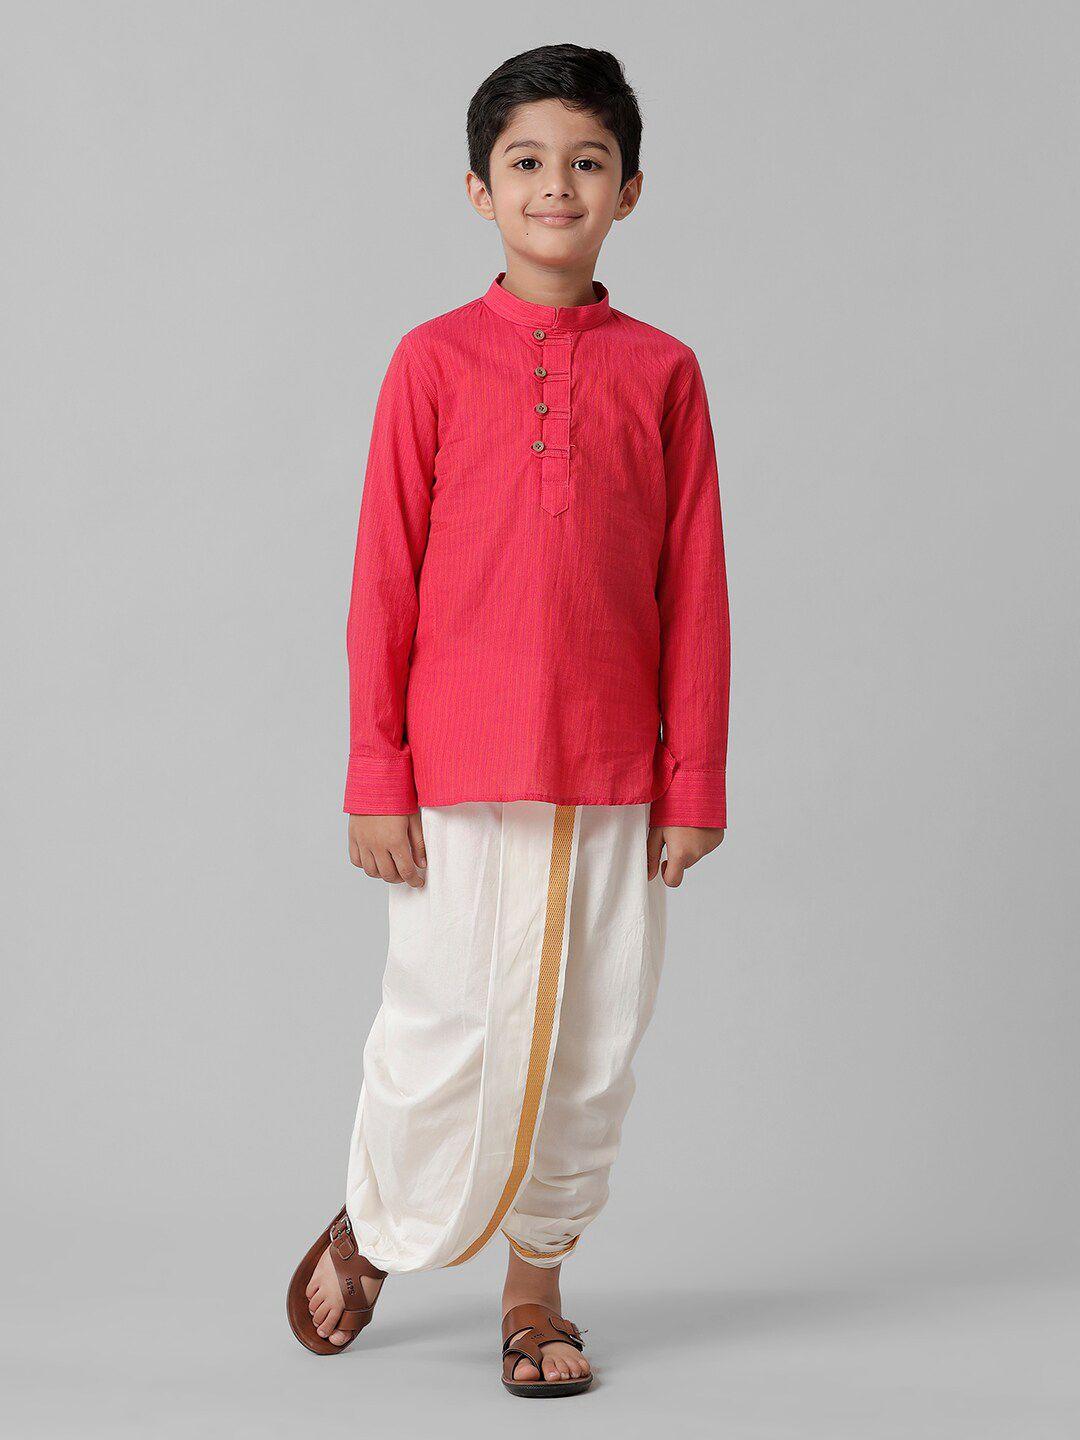 ramraj-boys-mandarin-collar-clothing-set